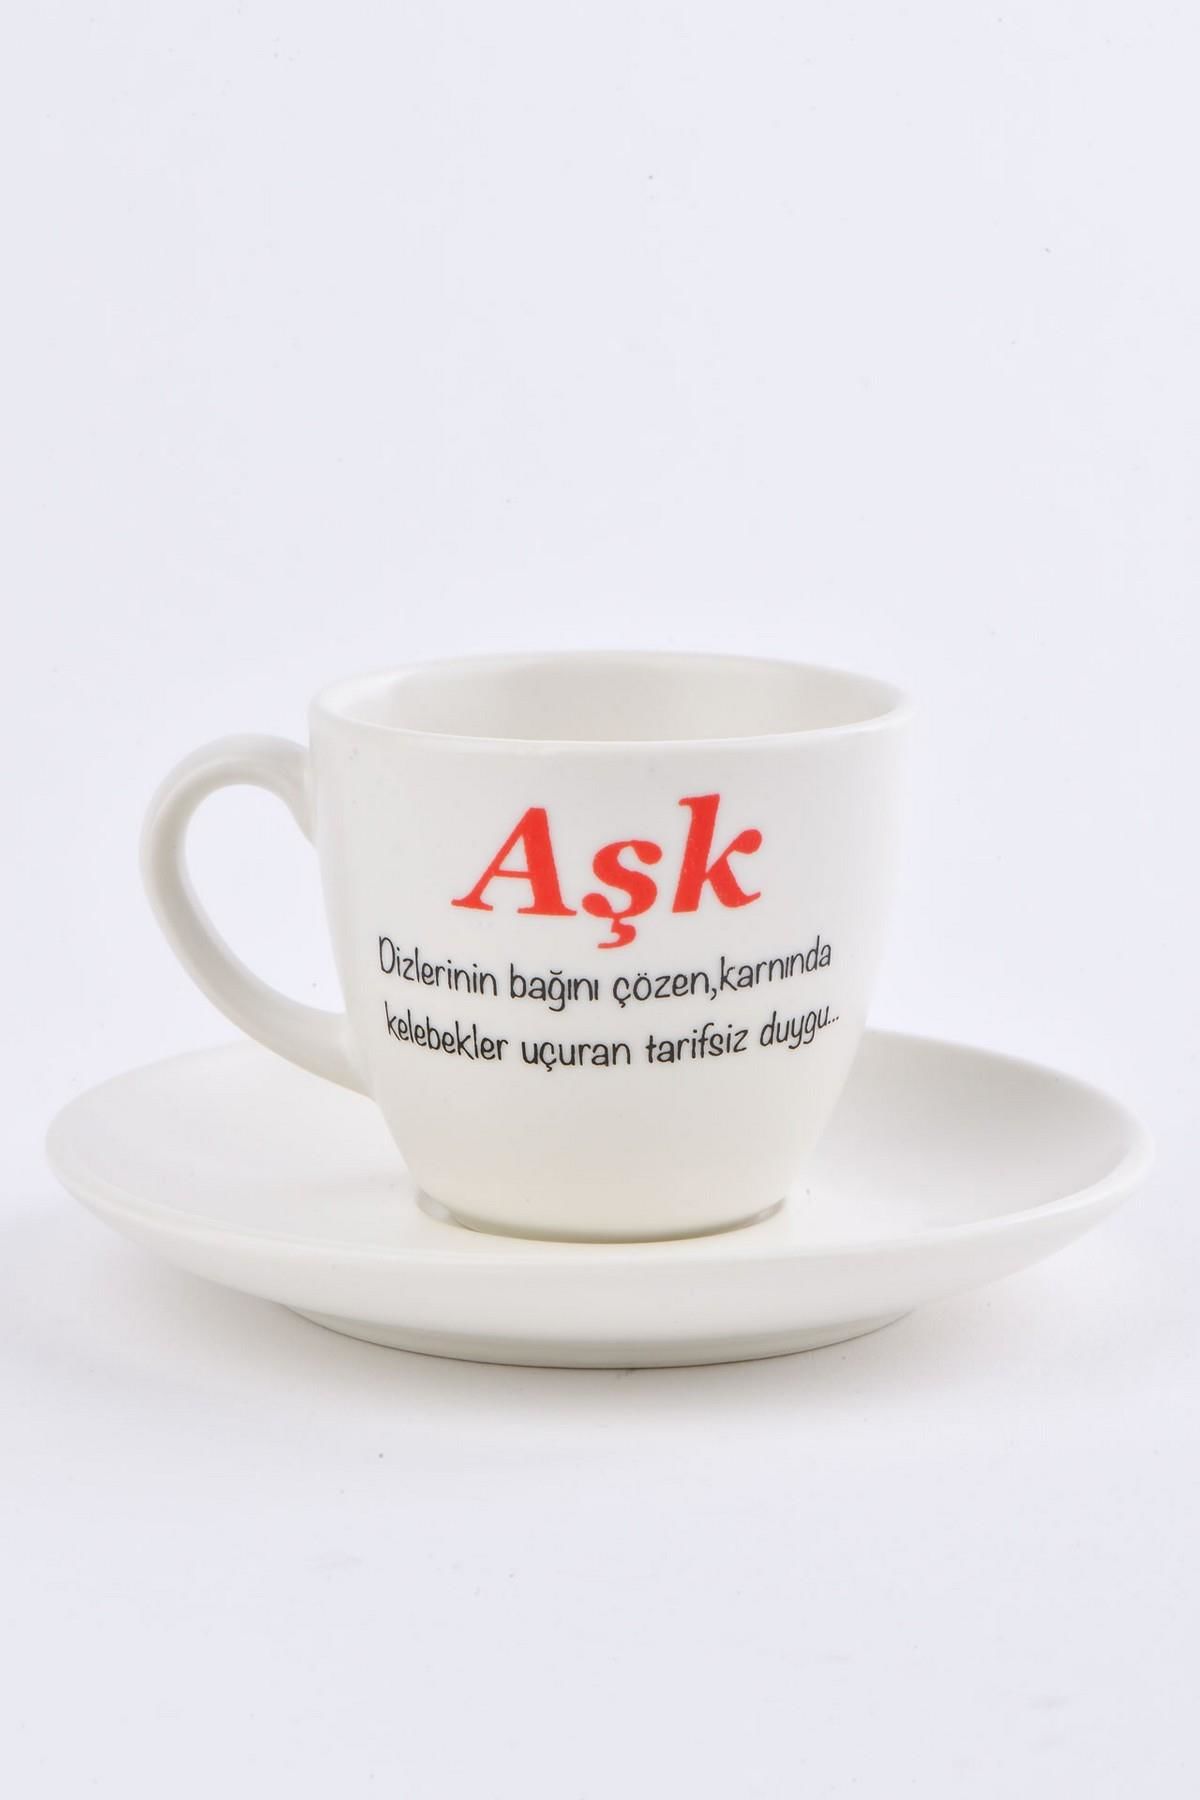 Soobepark 'Aşk' Yazılı Hediyelik Türk Kahve Fincan Takımı Krem